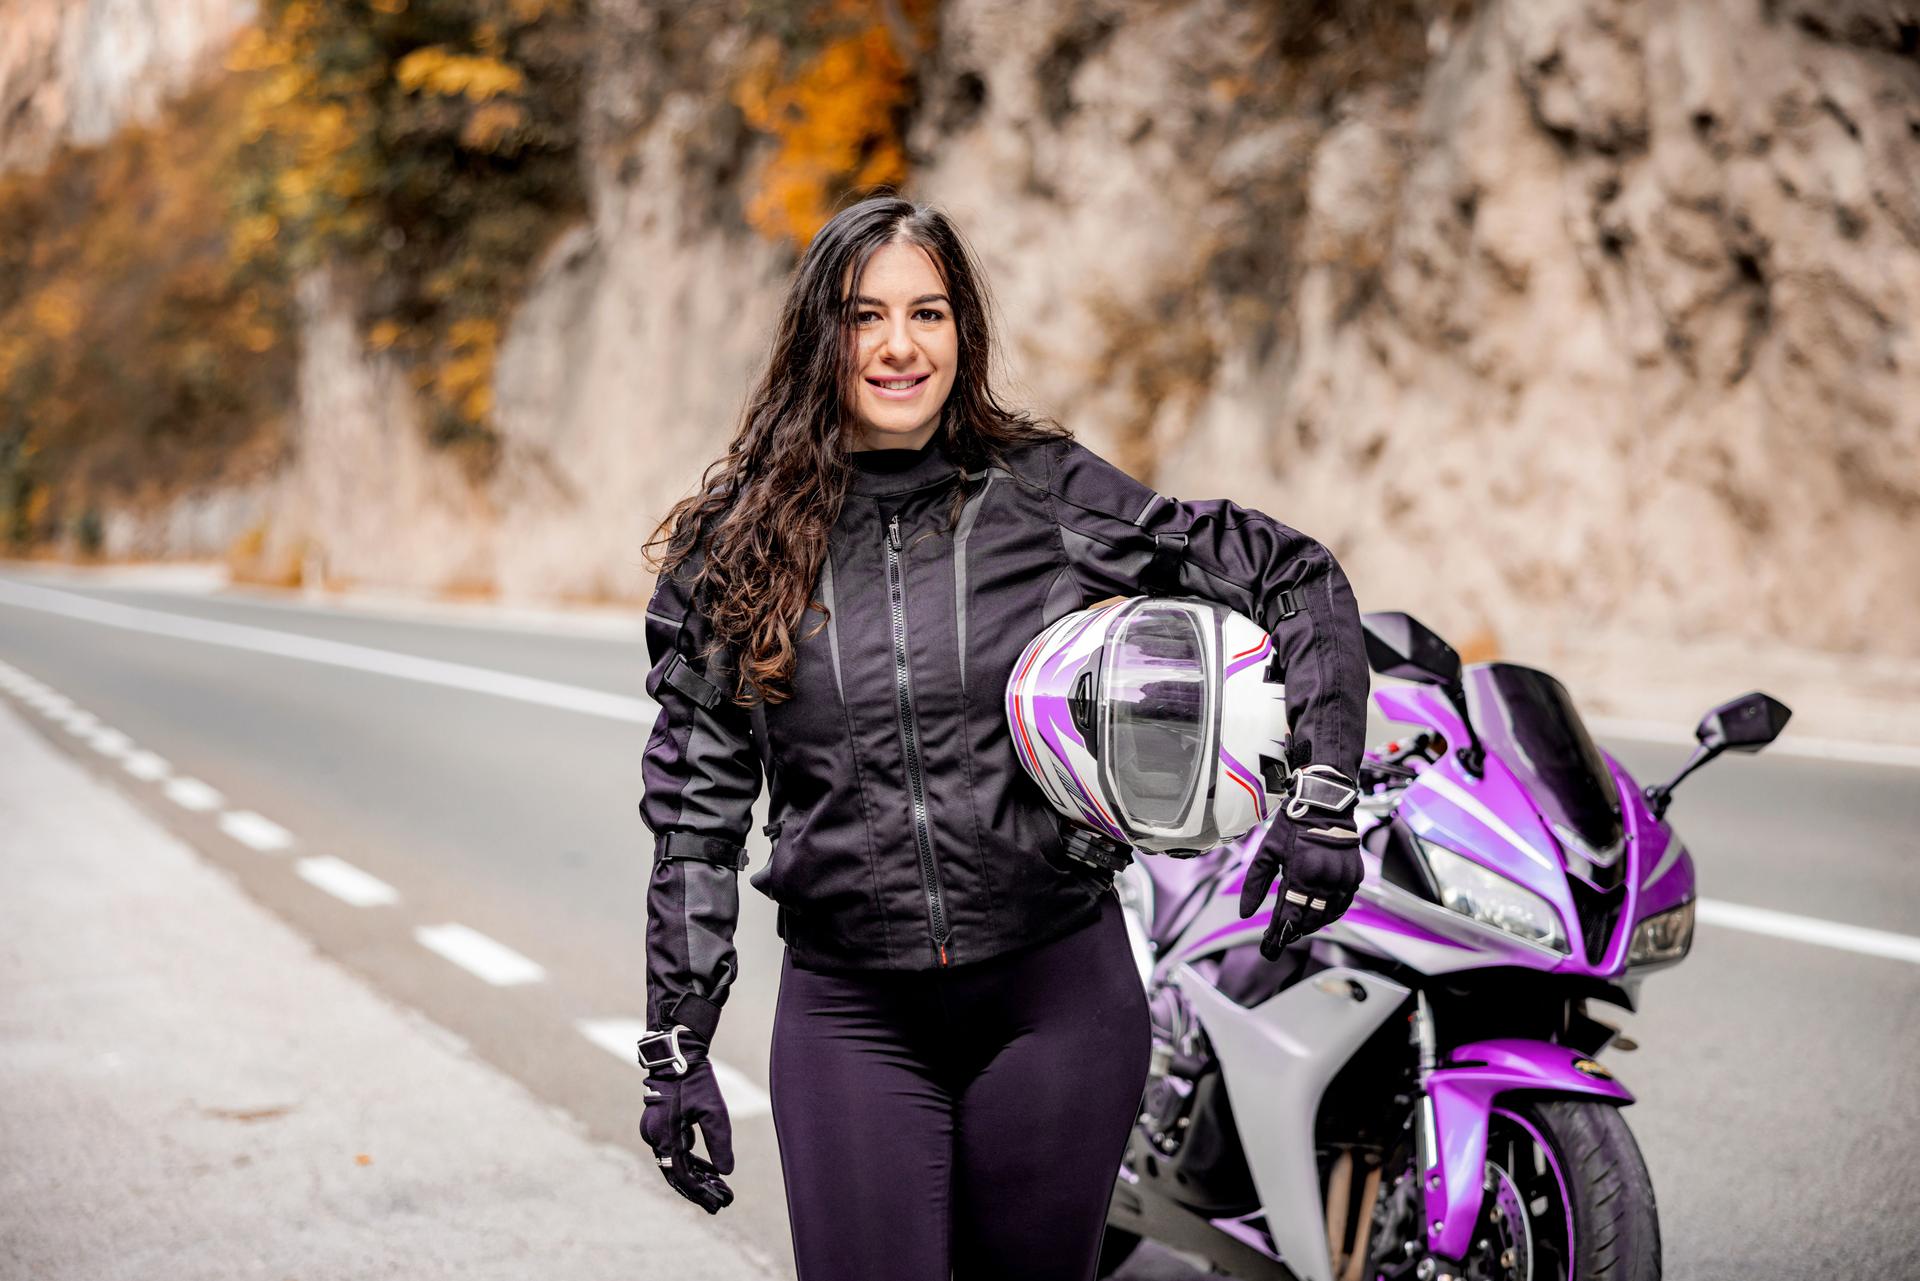 Junge Frau mit Helm unterm arm steht vor einem lilafarbenen Motorrad an einer Landstraße und lächelt in die Kamera.